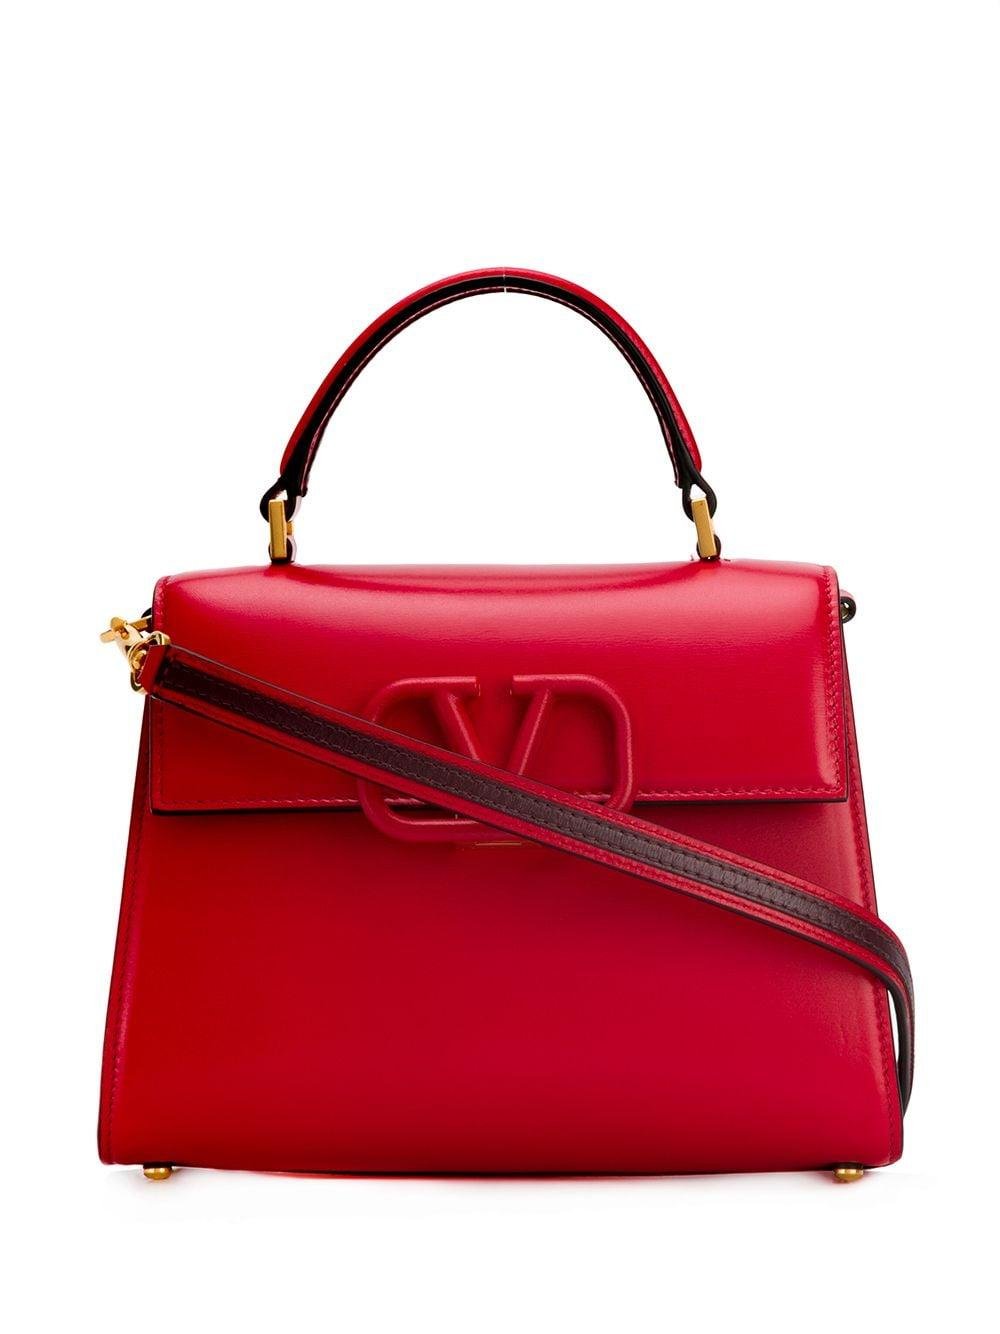 Valentino Garavani Leather Valentino Garavani Vsling Top Handle Bag in ...